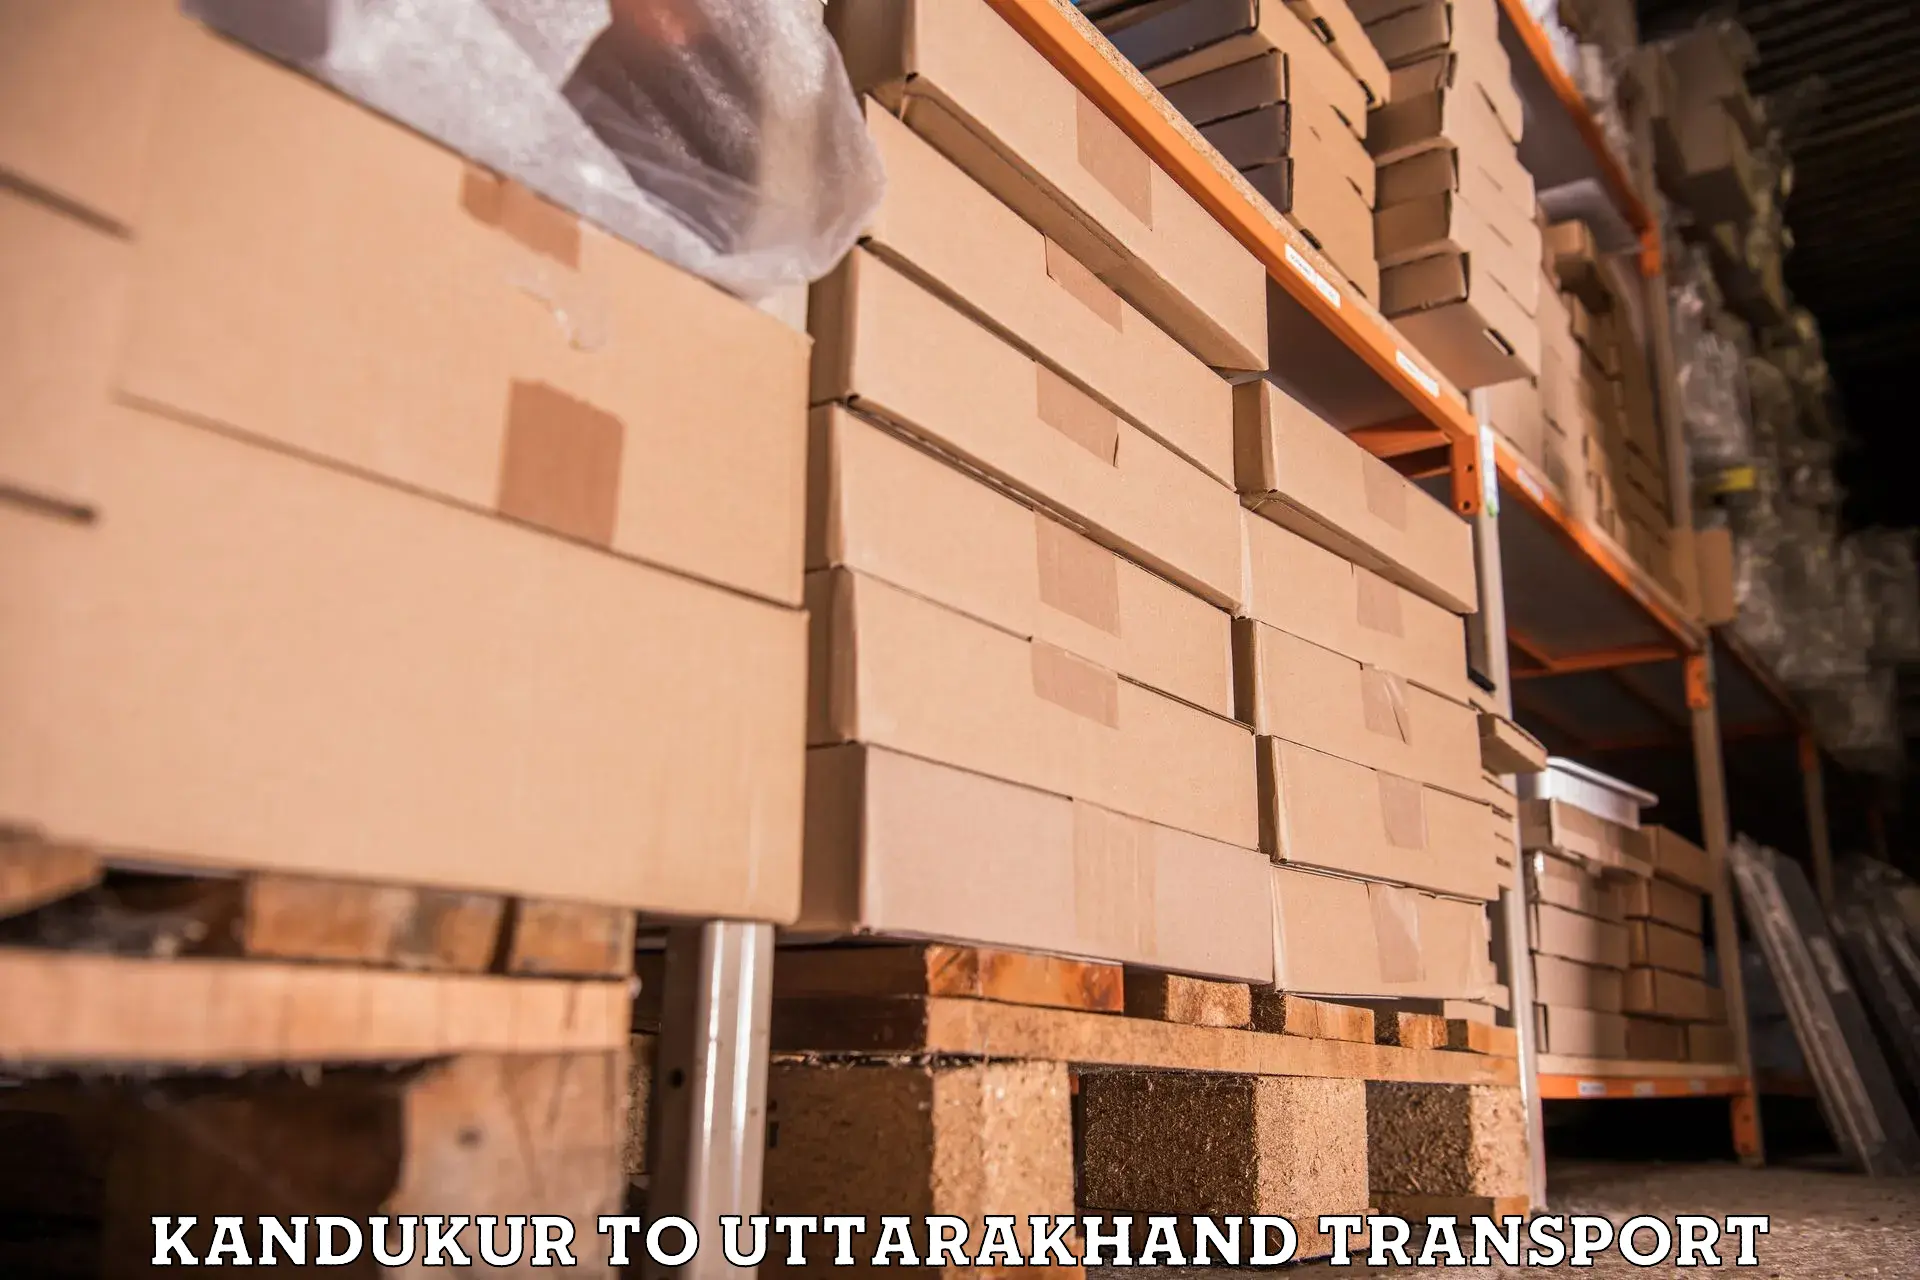 Shipping partner Kandukur to Uttarakhand